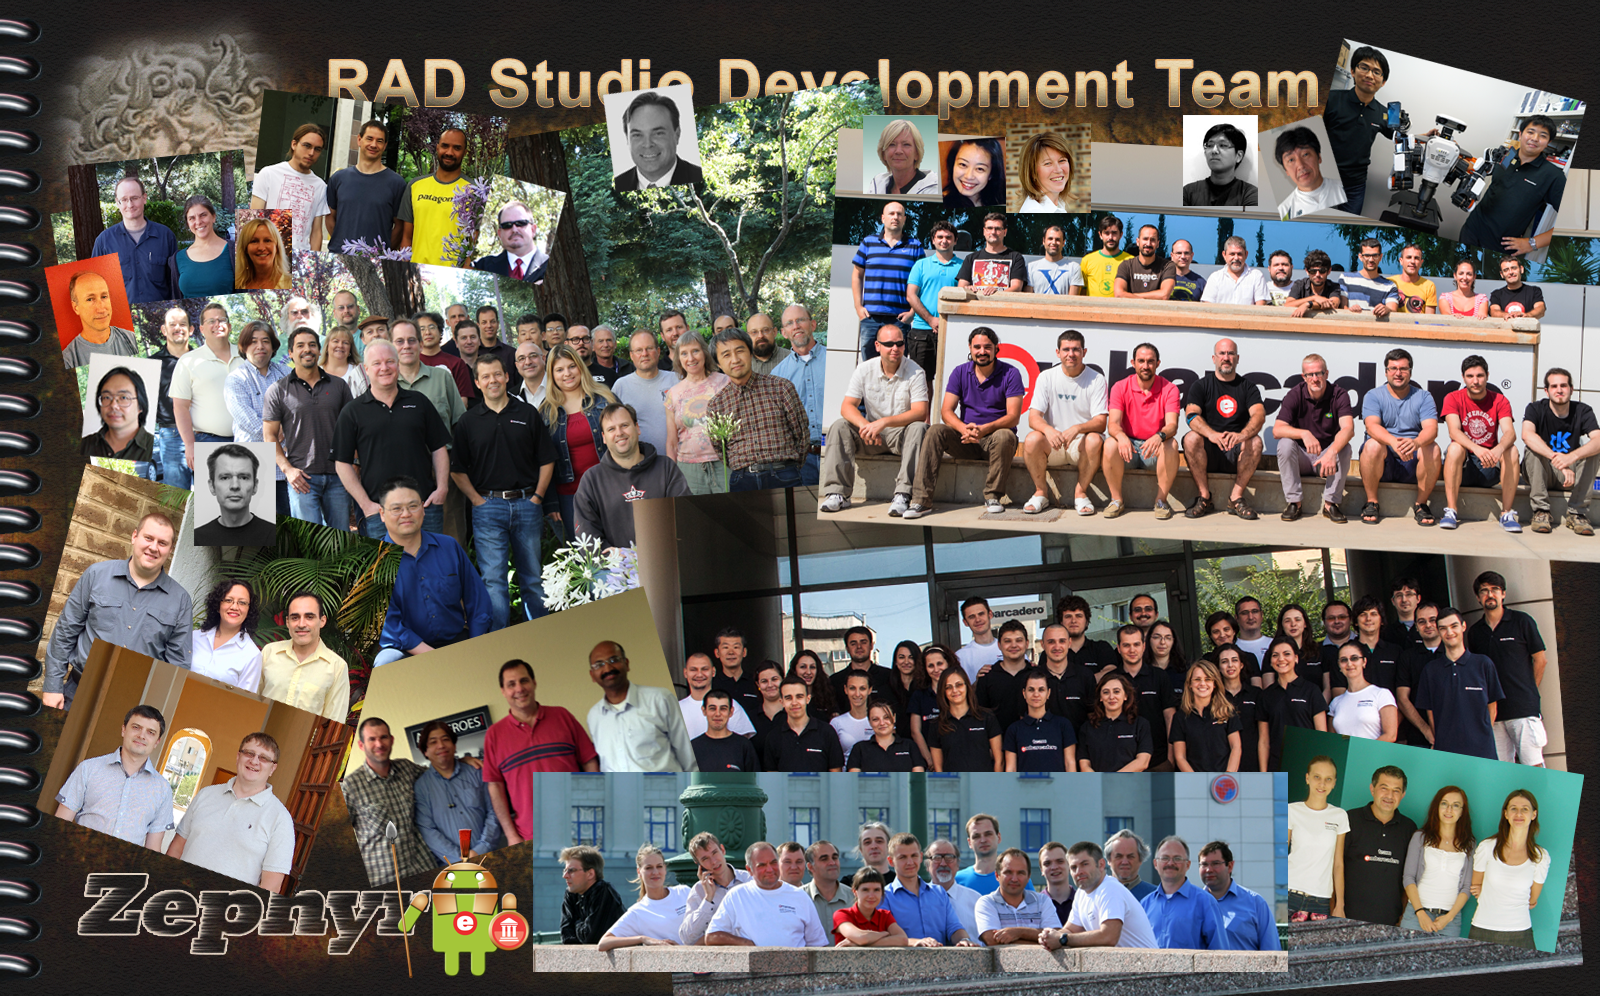 RAD Studio XE5 team image